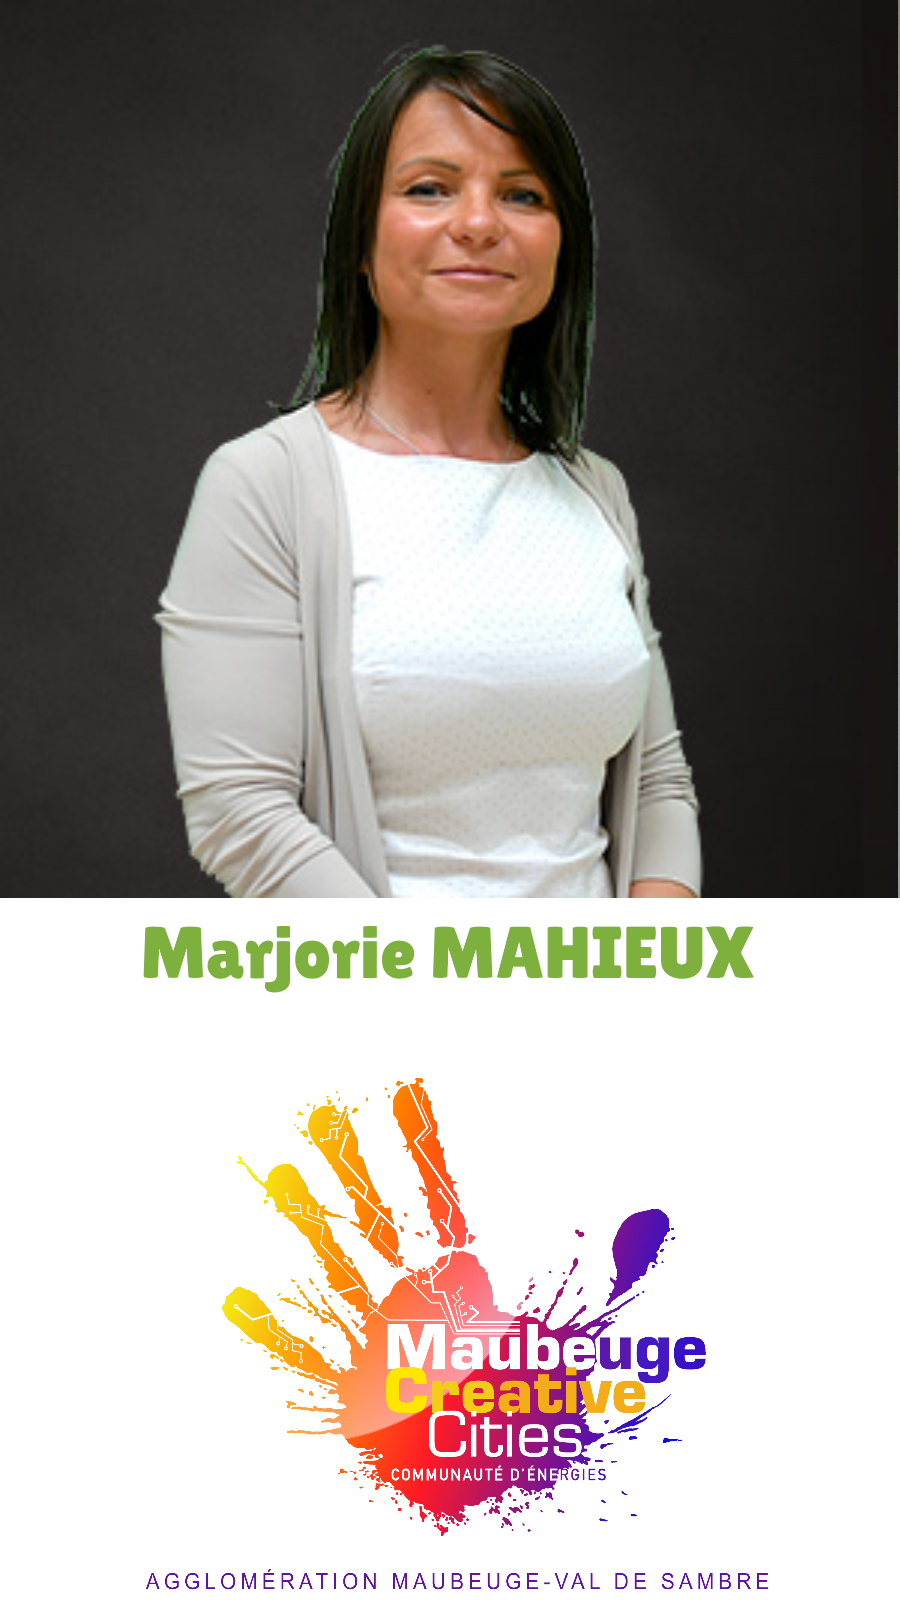 Marjorie MAHIEUX